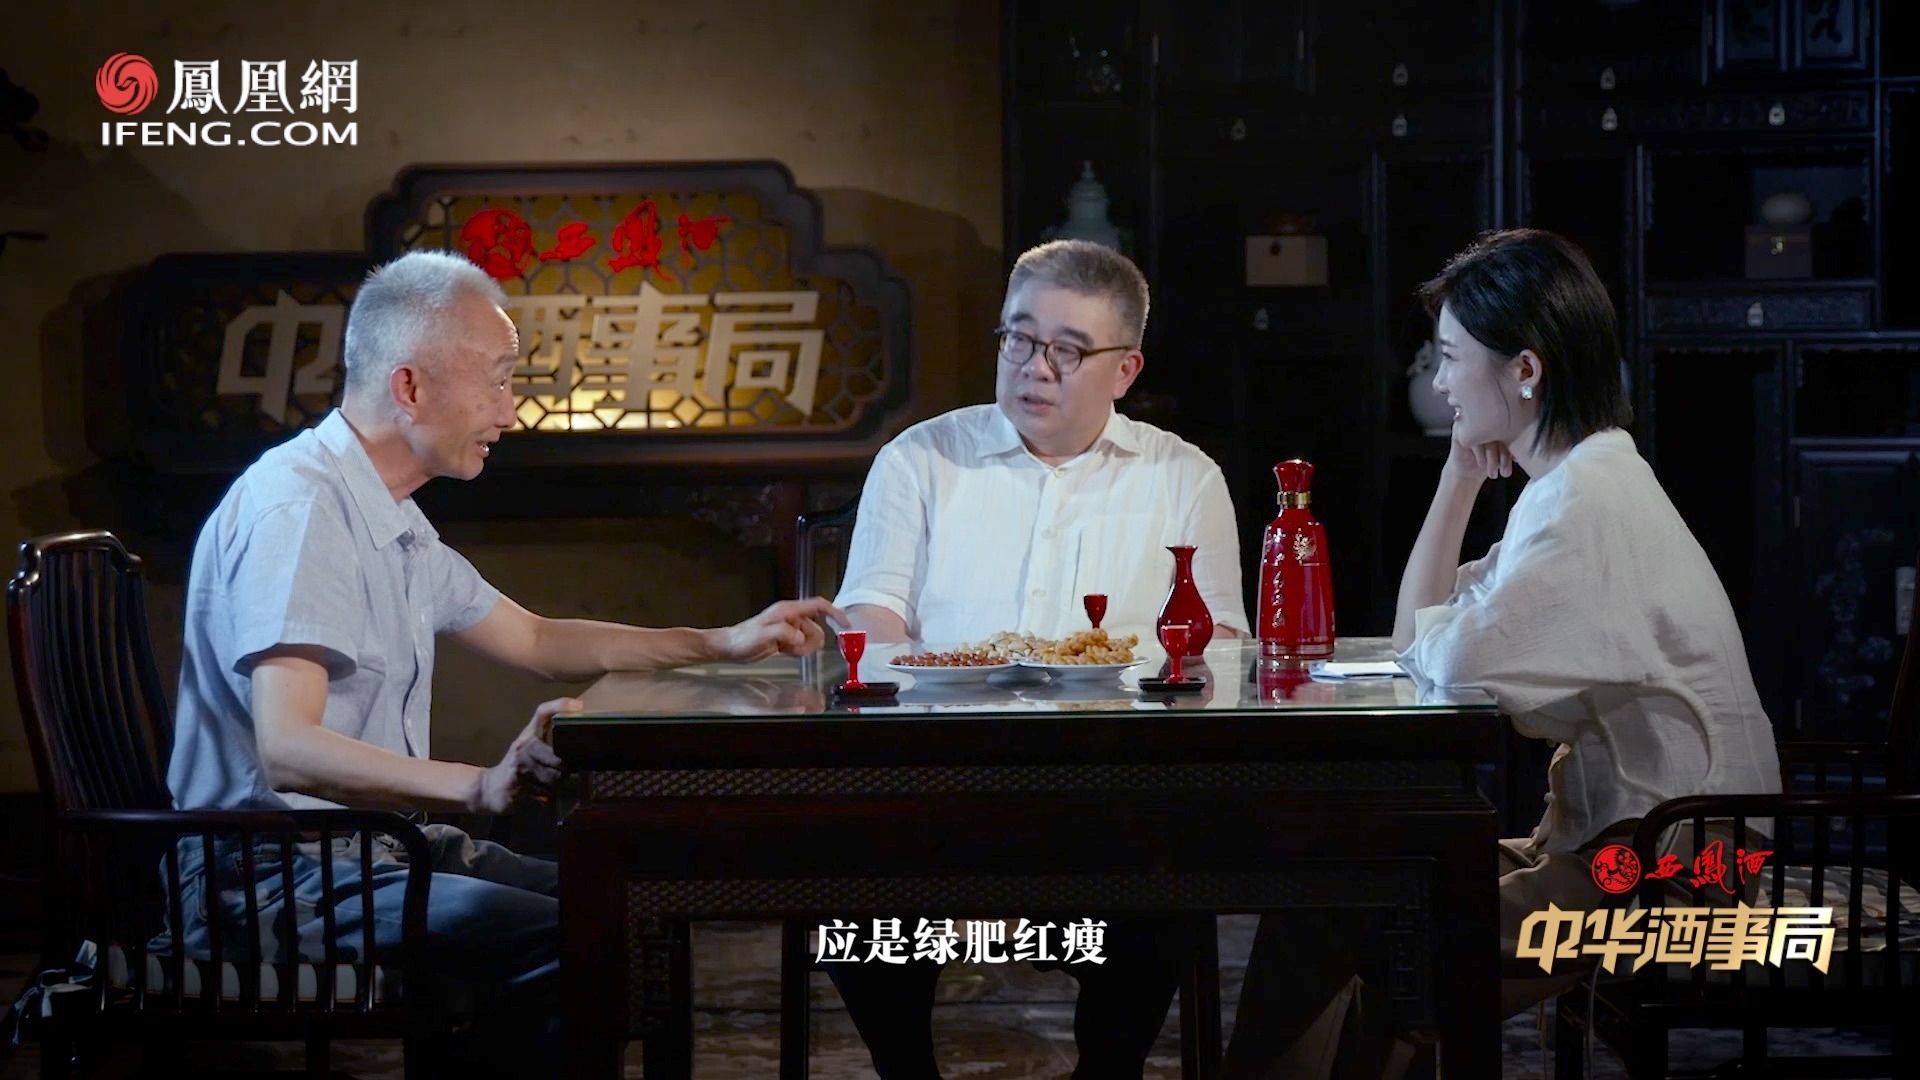 中国首部生命关怀题材影片《生命的感叹号》在深圳市开机_公益